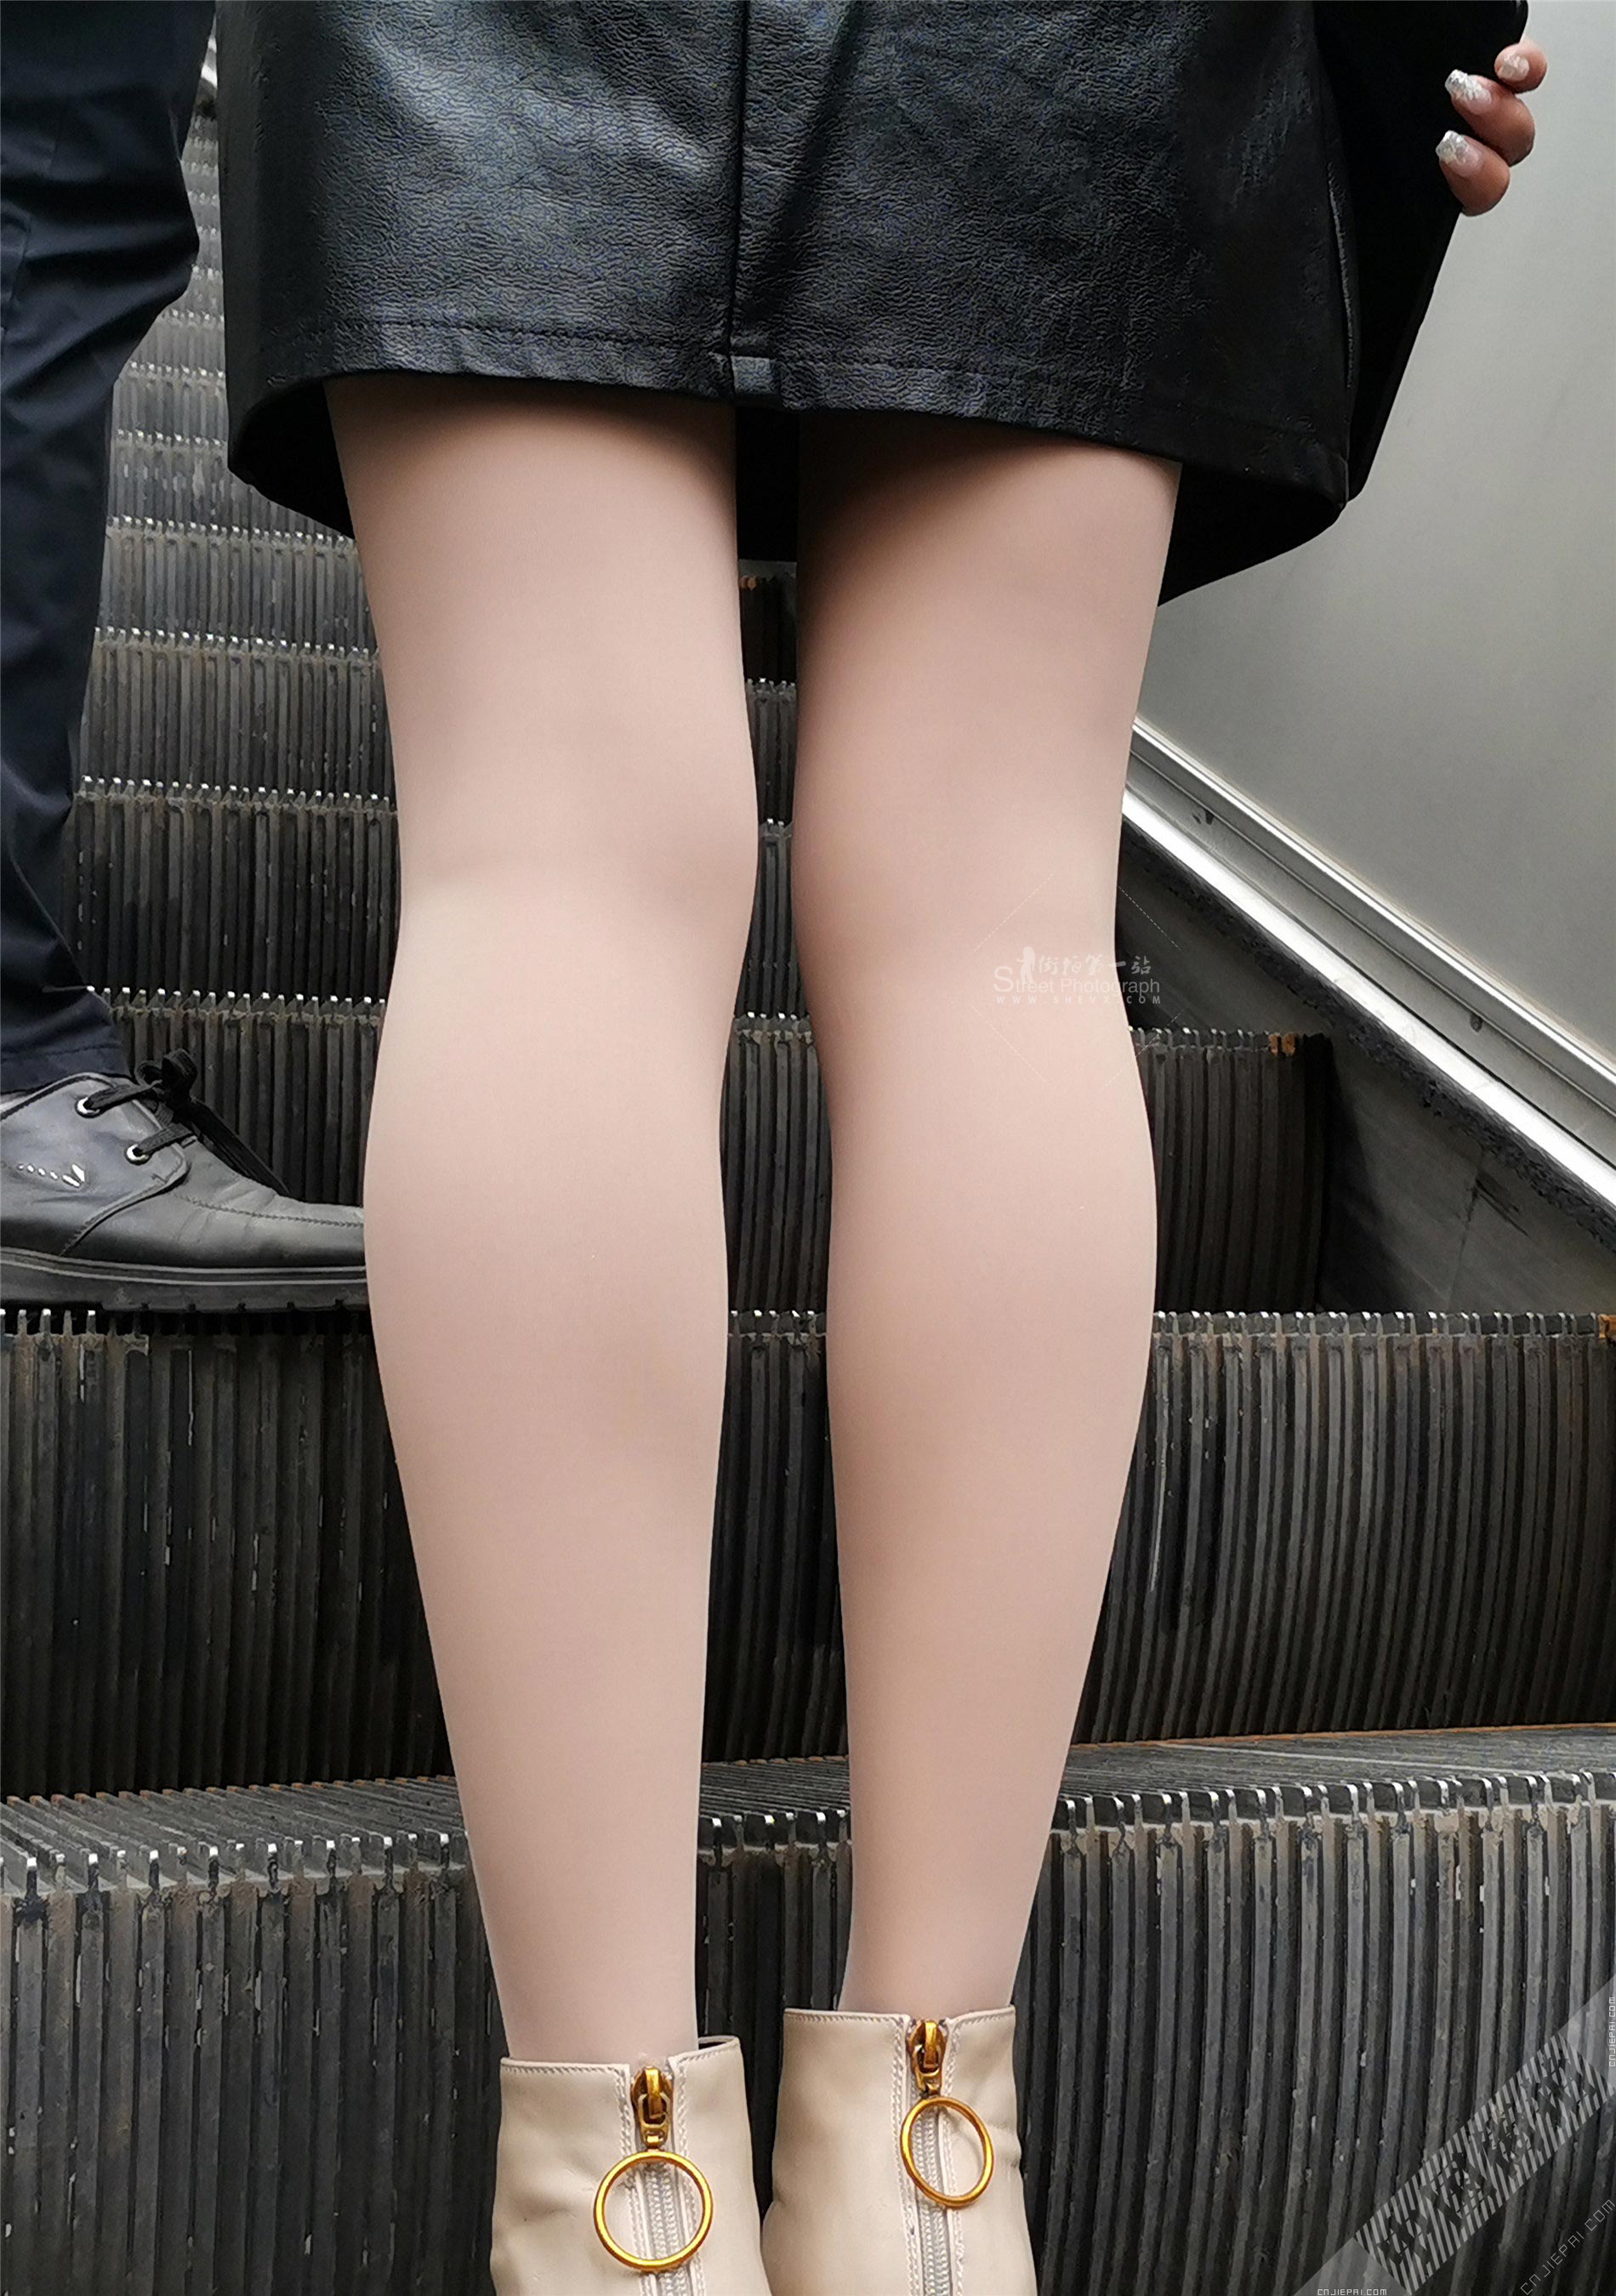 抓拍电梯上厚肉丝少妇光滑的双腿 图3